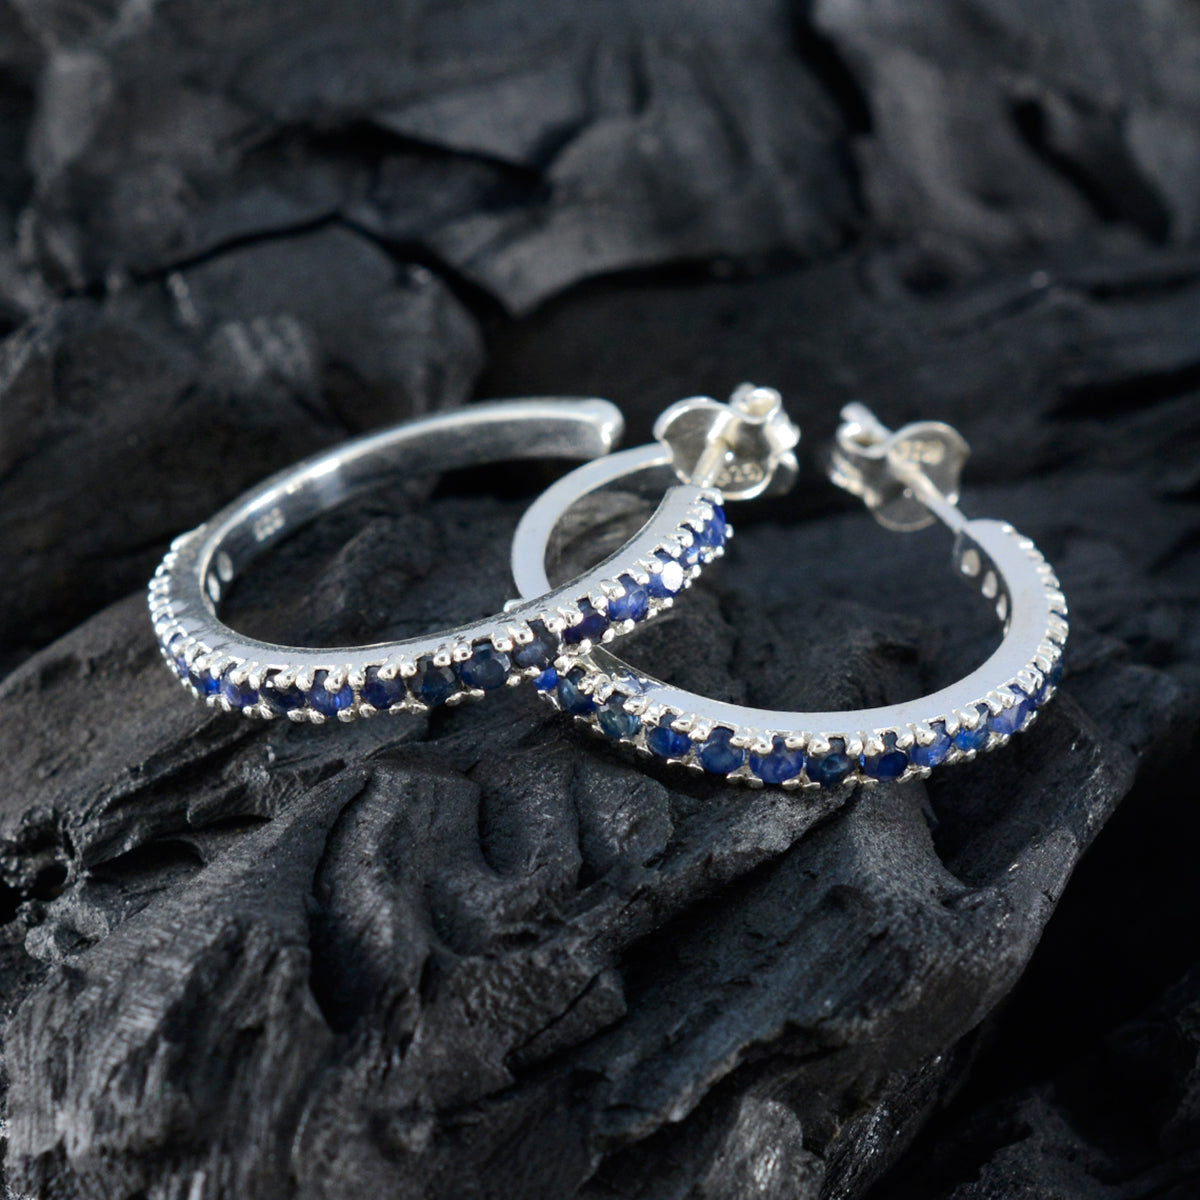 Riyo Lovely 925 Sterling Silver Earring For Women Indian Sapphire Earring Bezel Setting Blue Earring Stud Earring